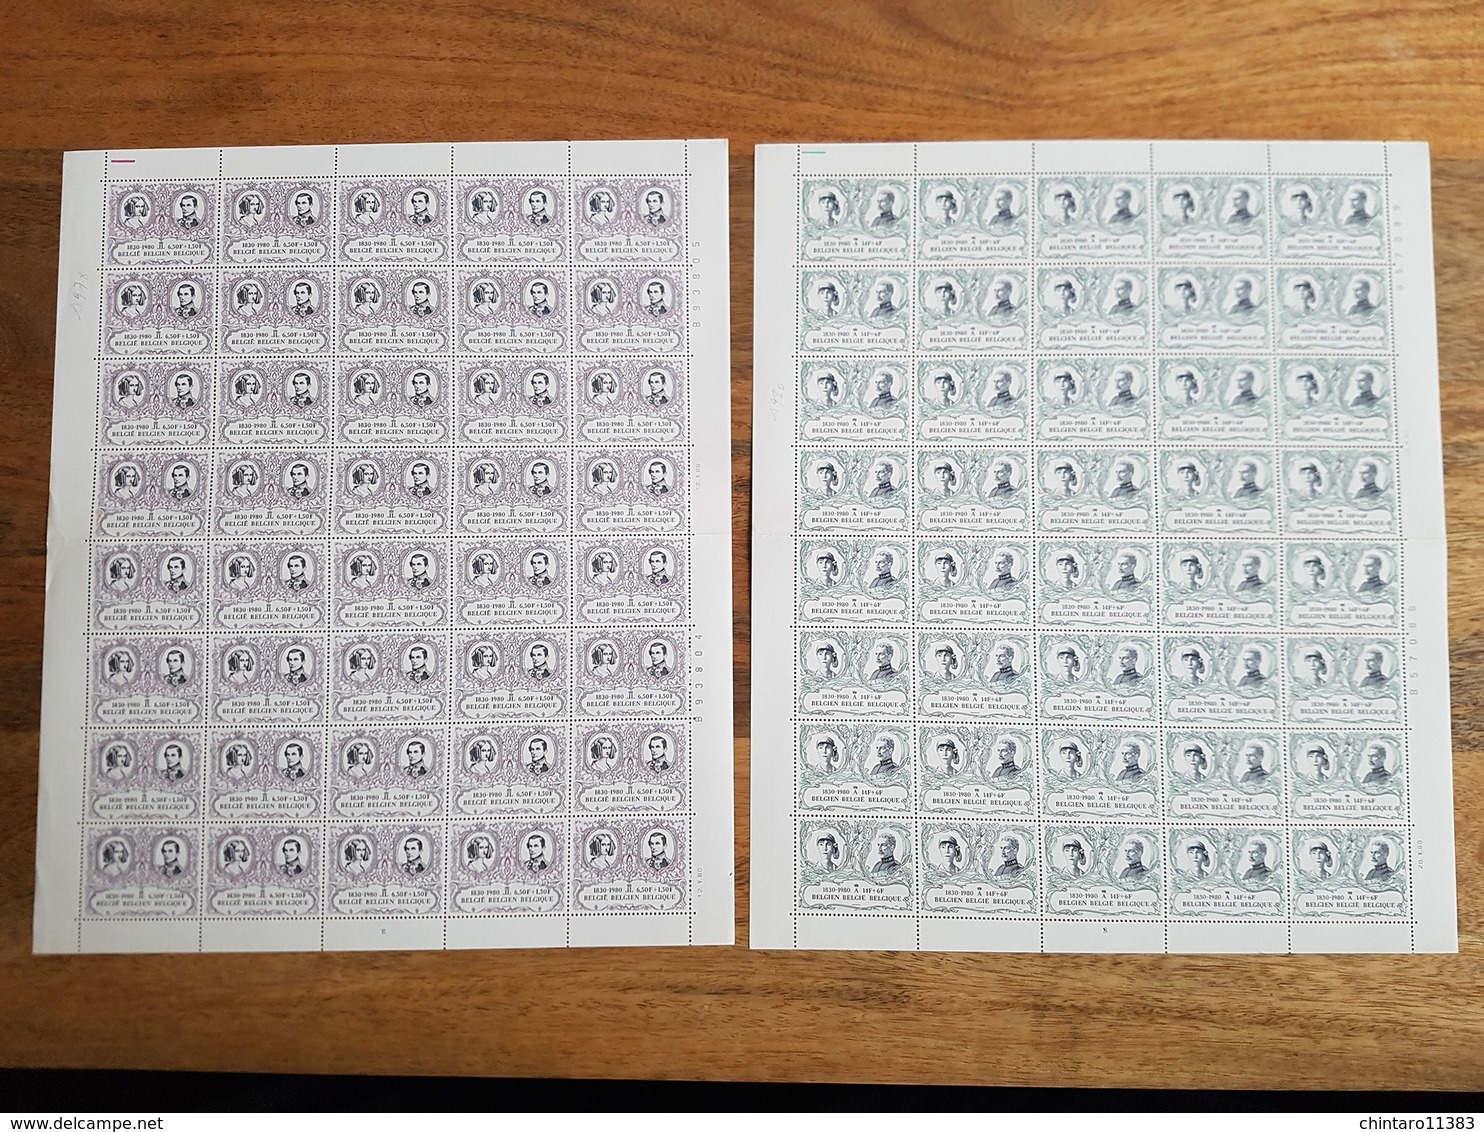 Lot feuilles complètes/incomplètes de timbres Belgique - Année 1980